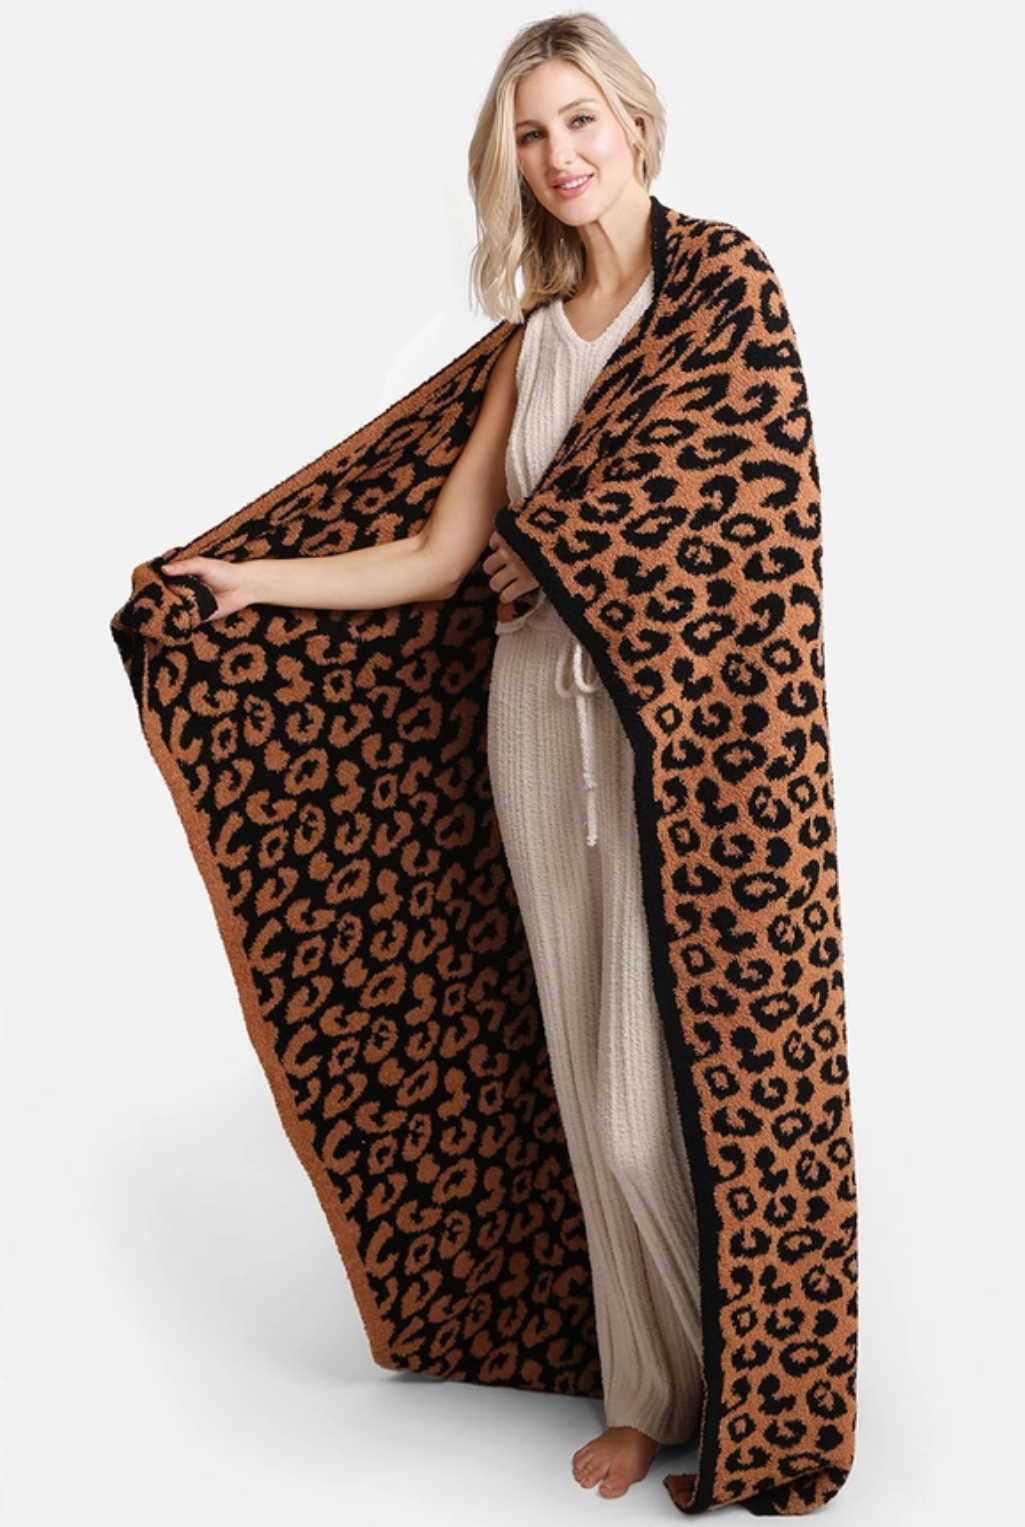 Leopard Blanket - Black